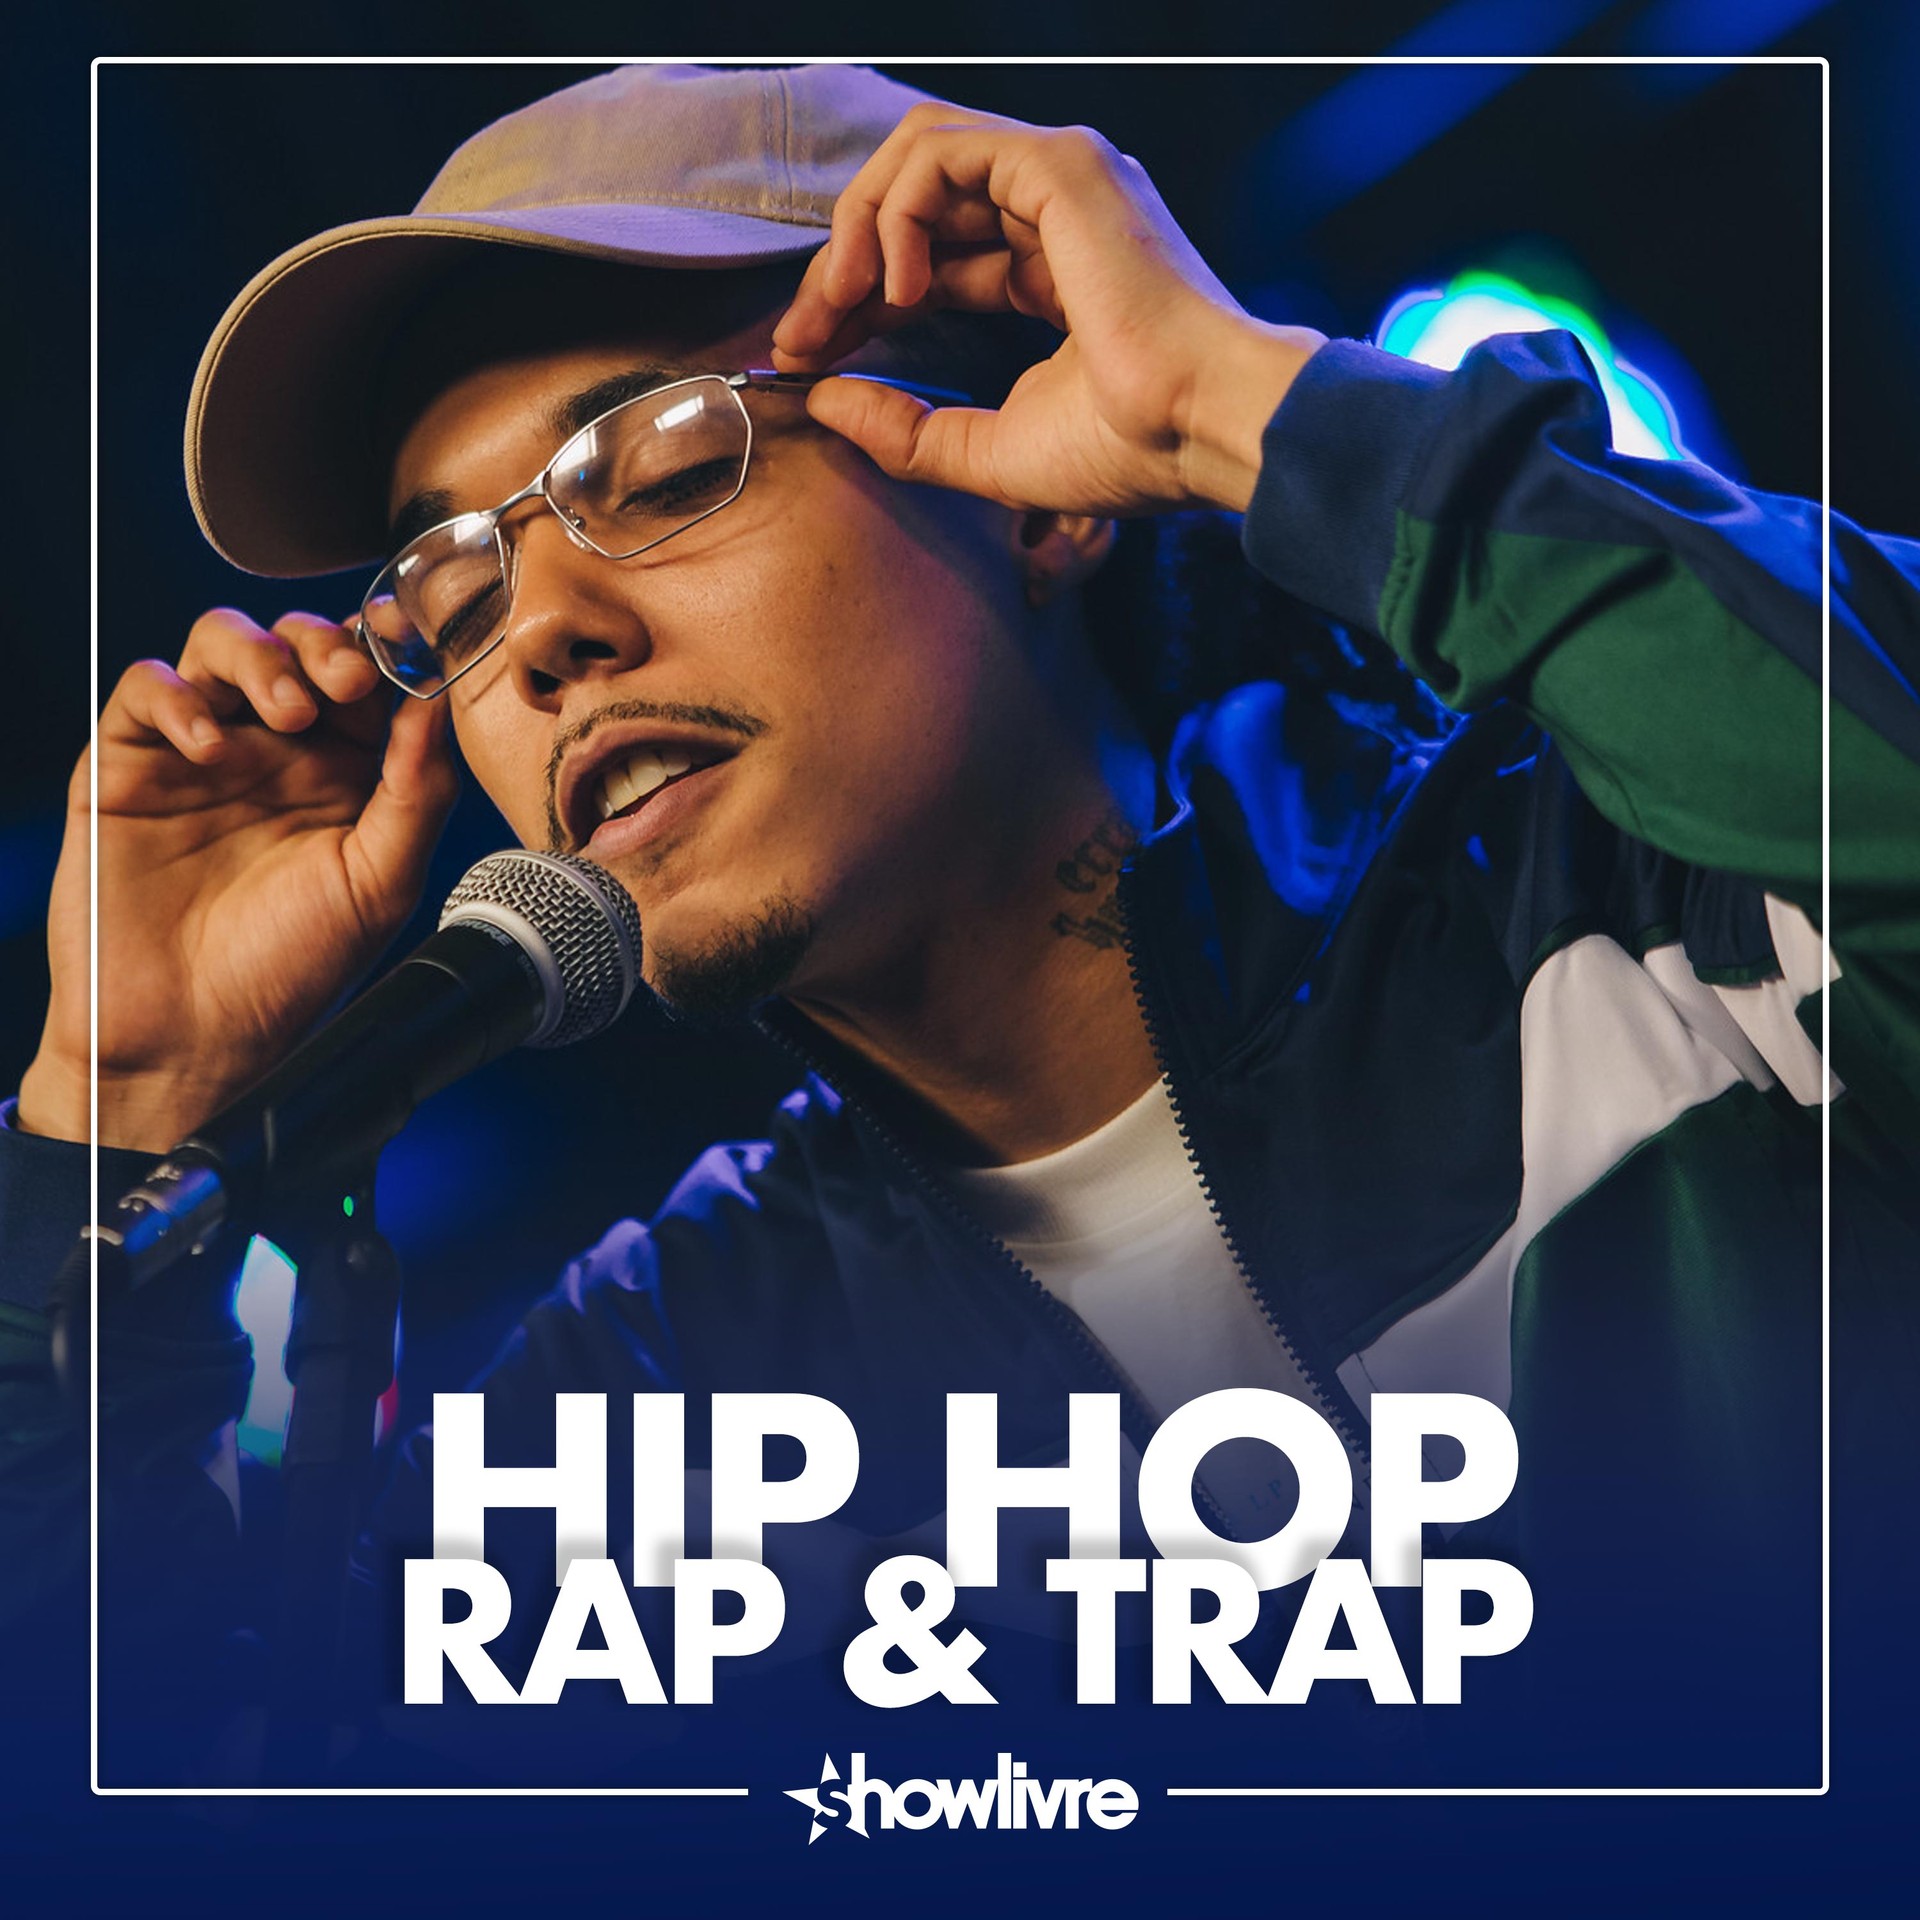 Hip Hop, Rap & Trap